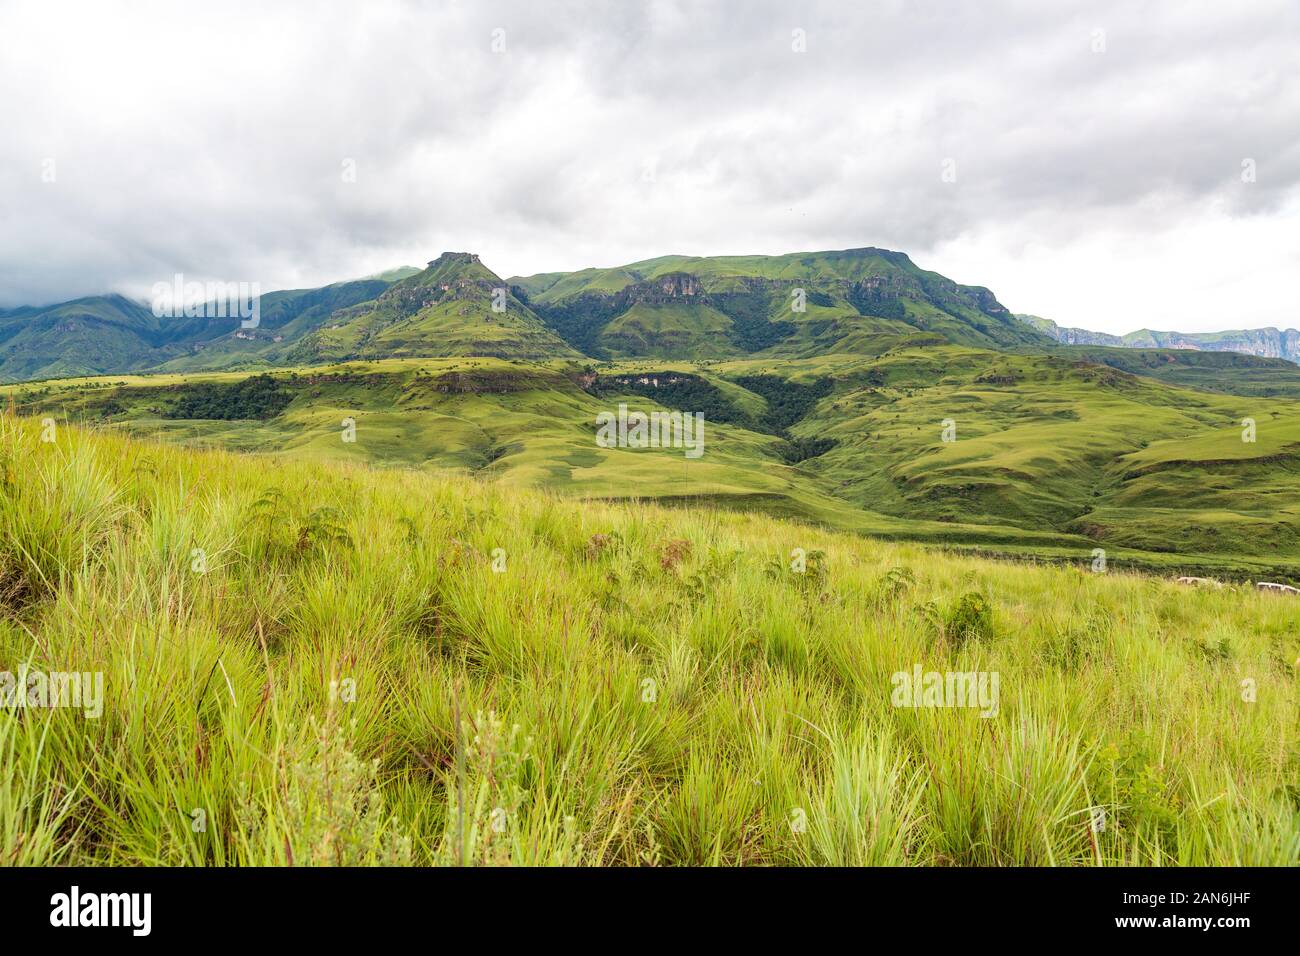 Le vert des montagnes de Drakensberg Maloti Park avec les herbes du premier plan, l'Afrique du Sud Banque D'Images